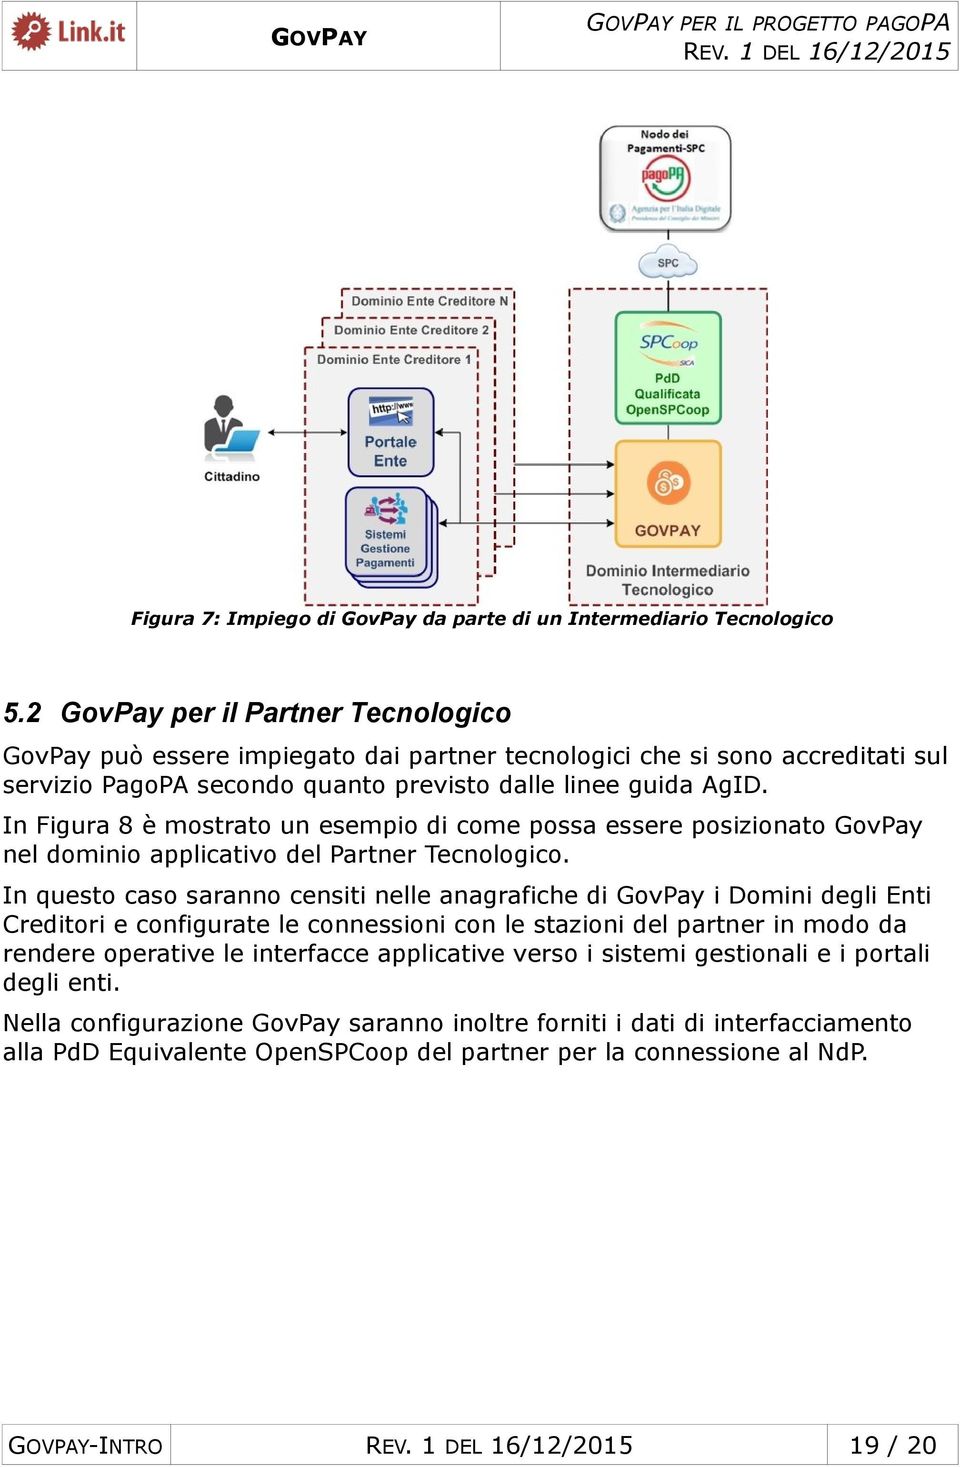 In Figura 8 è mostrato un esempio di come possa essere posizionato GovPay nel dominio applicativo del Partner Tecnologico.